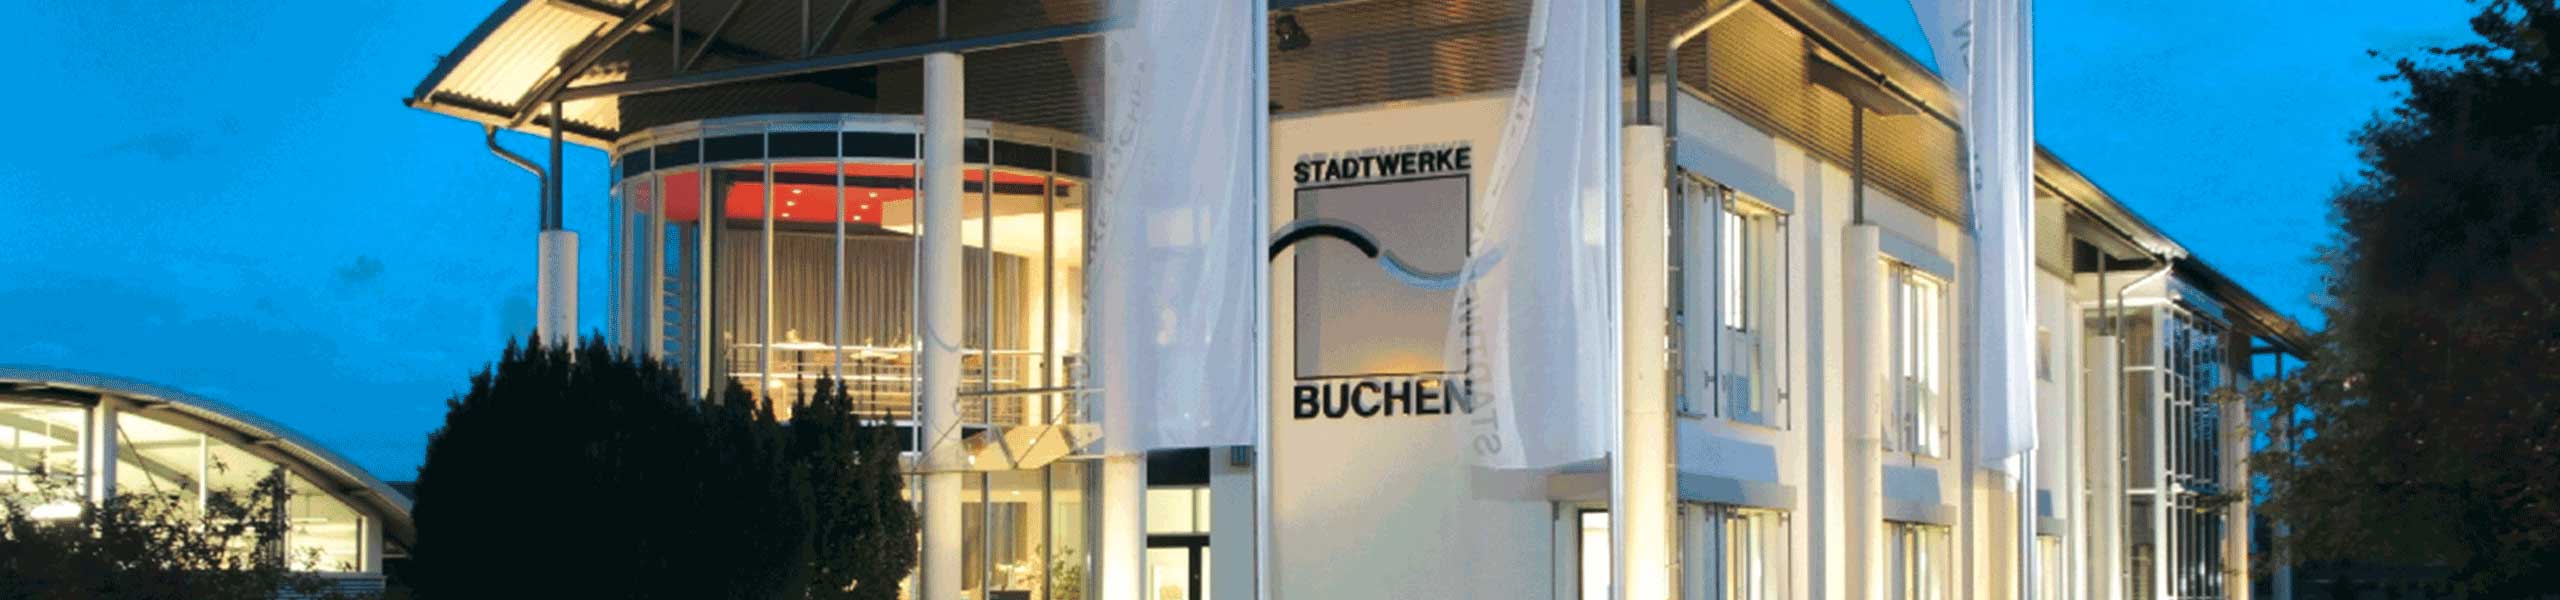 Stadtwerke Buchen GmbH & Co KG - Ihr Versorger vor Ort - Ausrufung der Alarmstufe des Notfallplans Gas